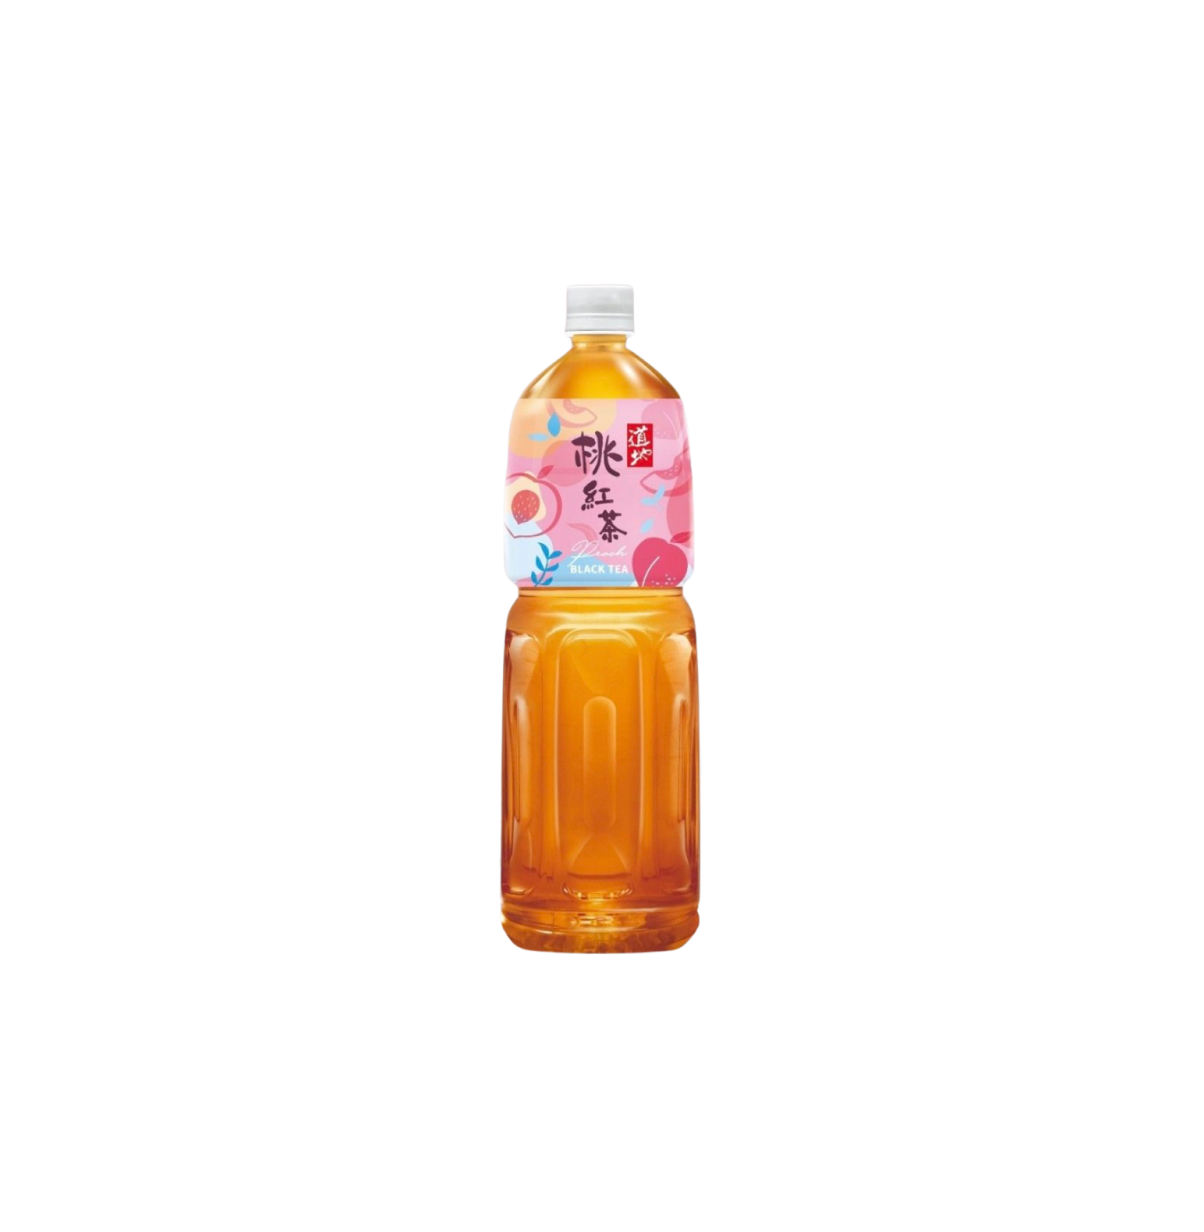 【$10/2件】道地 桃紅茶 1.5 L